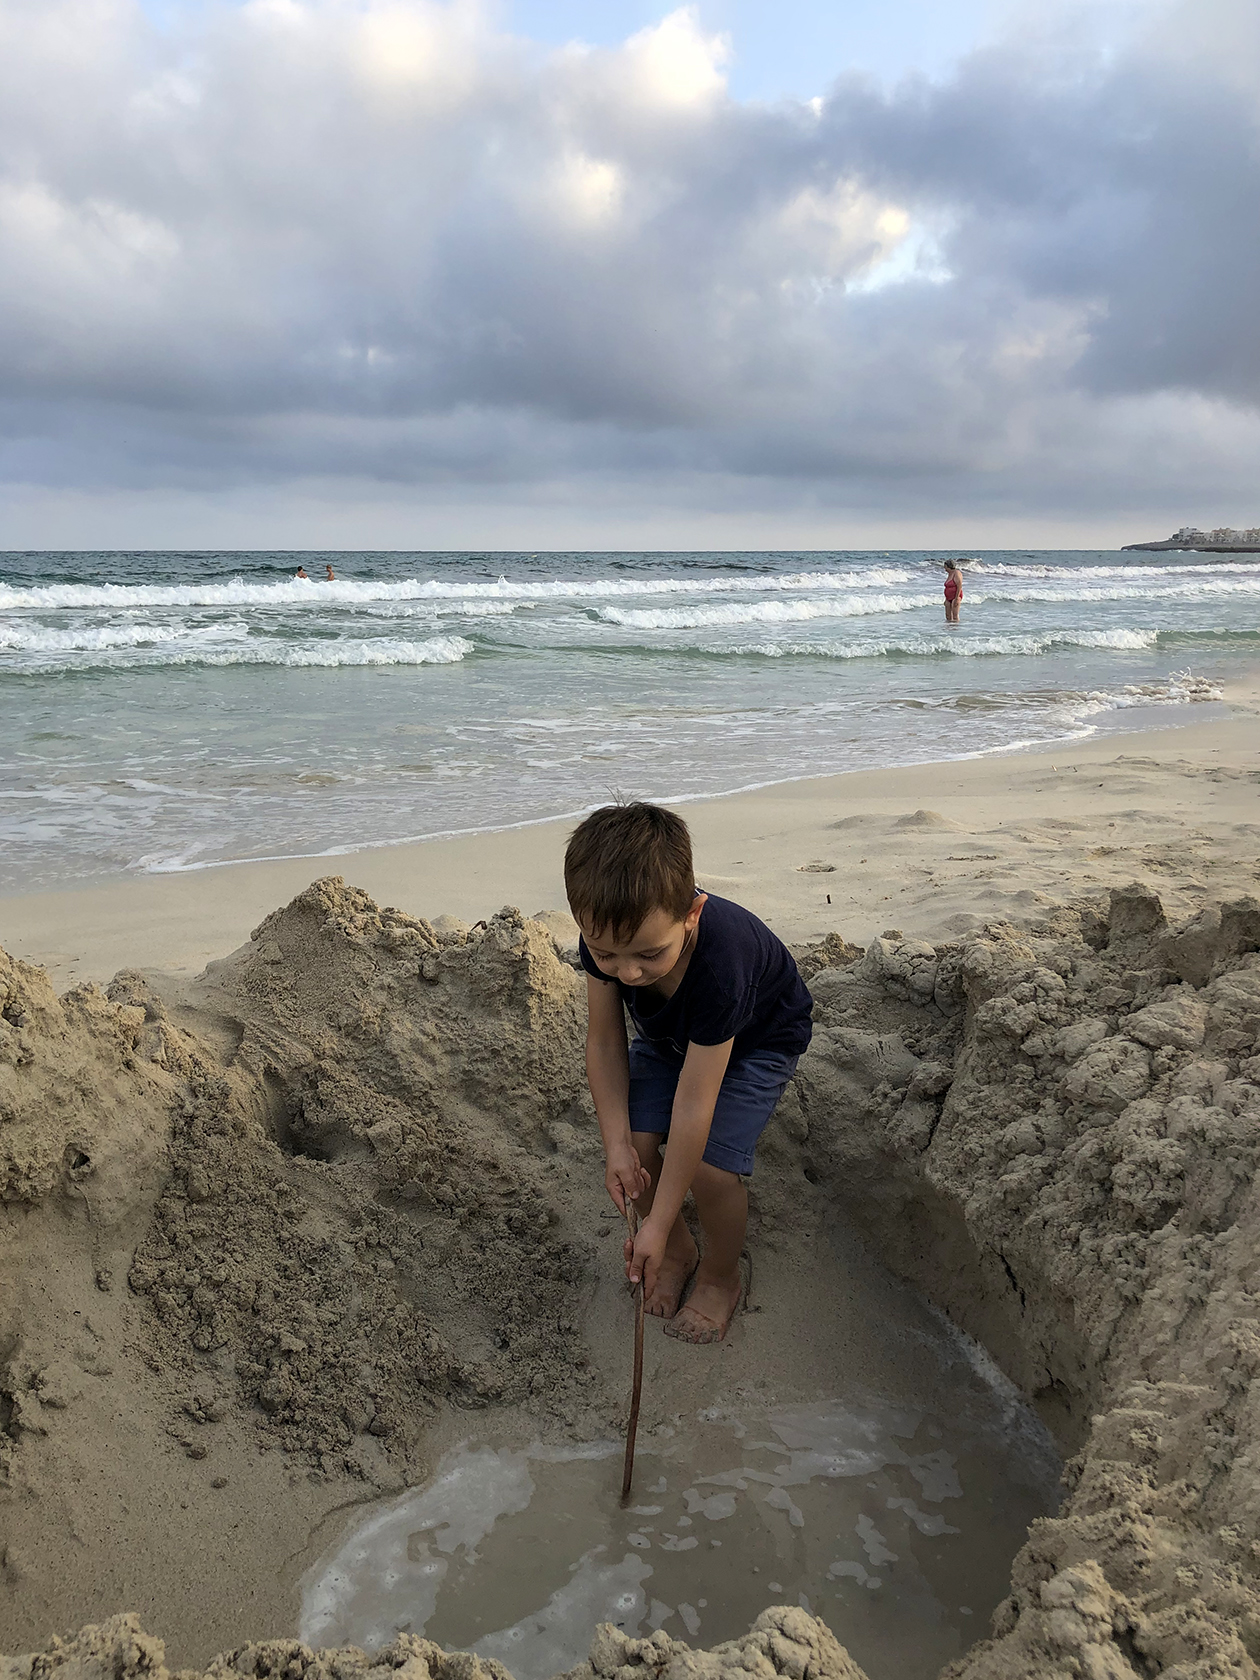 На море дети любят не только плавать, но и играть в песок